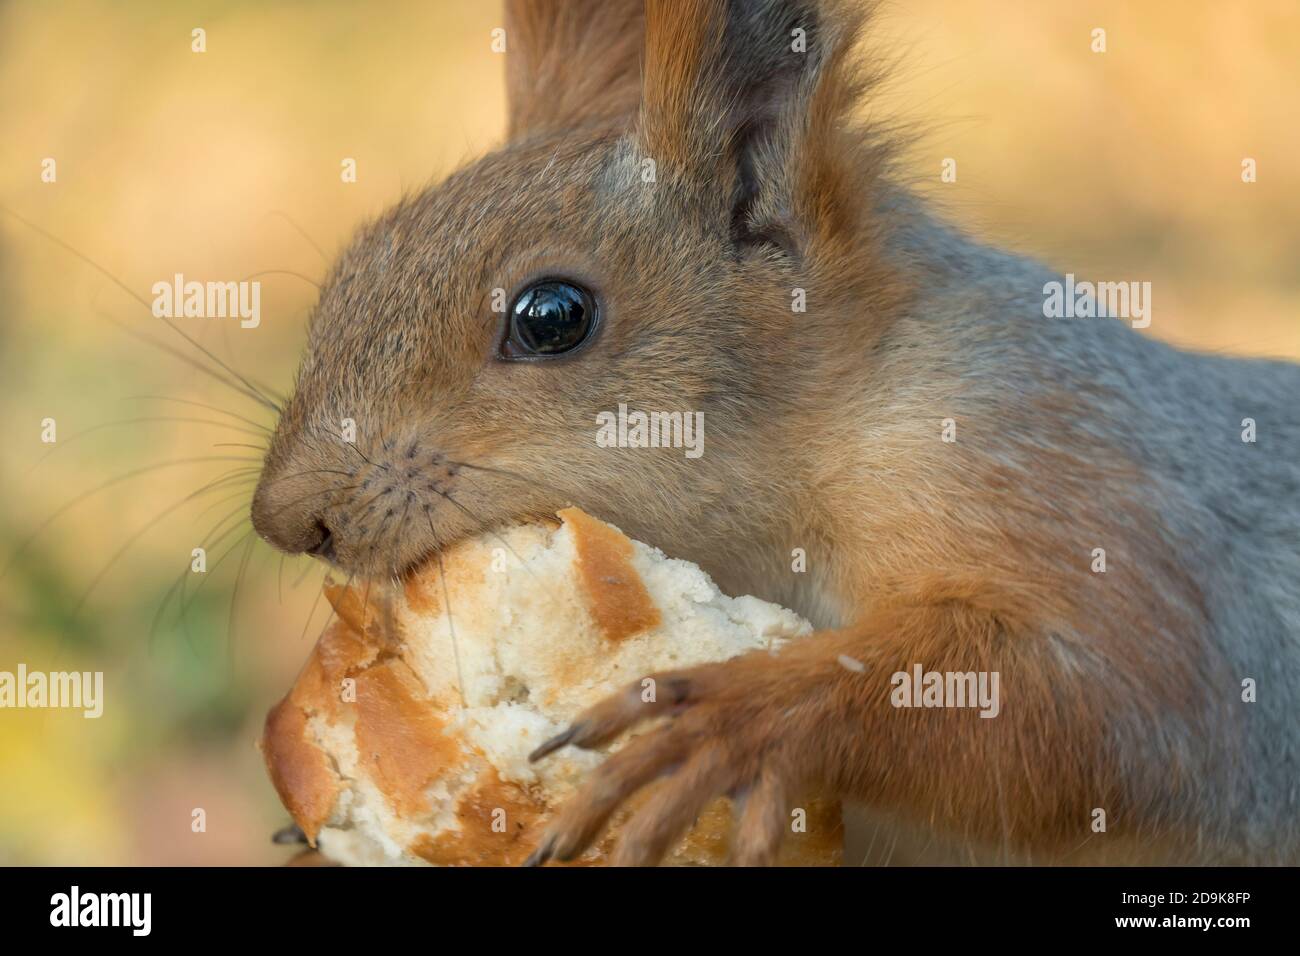 Uno scoiattolo con una coda soffice mangia pane. Piccolo roditore mangia da vicino. Zoologia, mammiferi, natura. Lo scoiattolo cambia colore in inverno. Alimentare lo scoiattolo Foto Stock